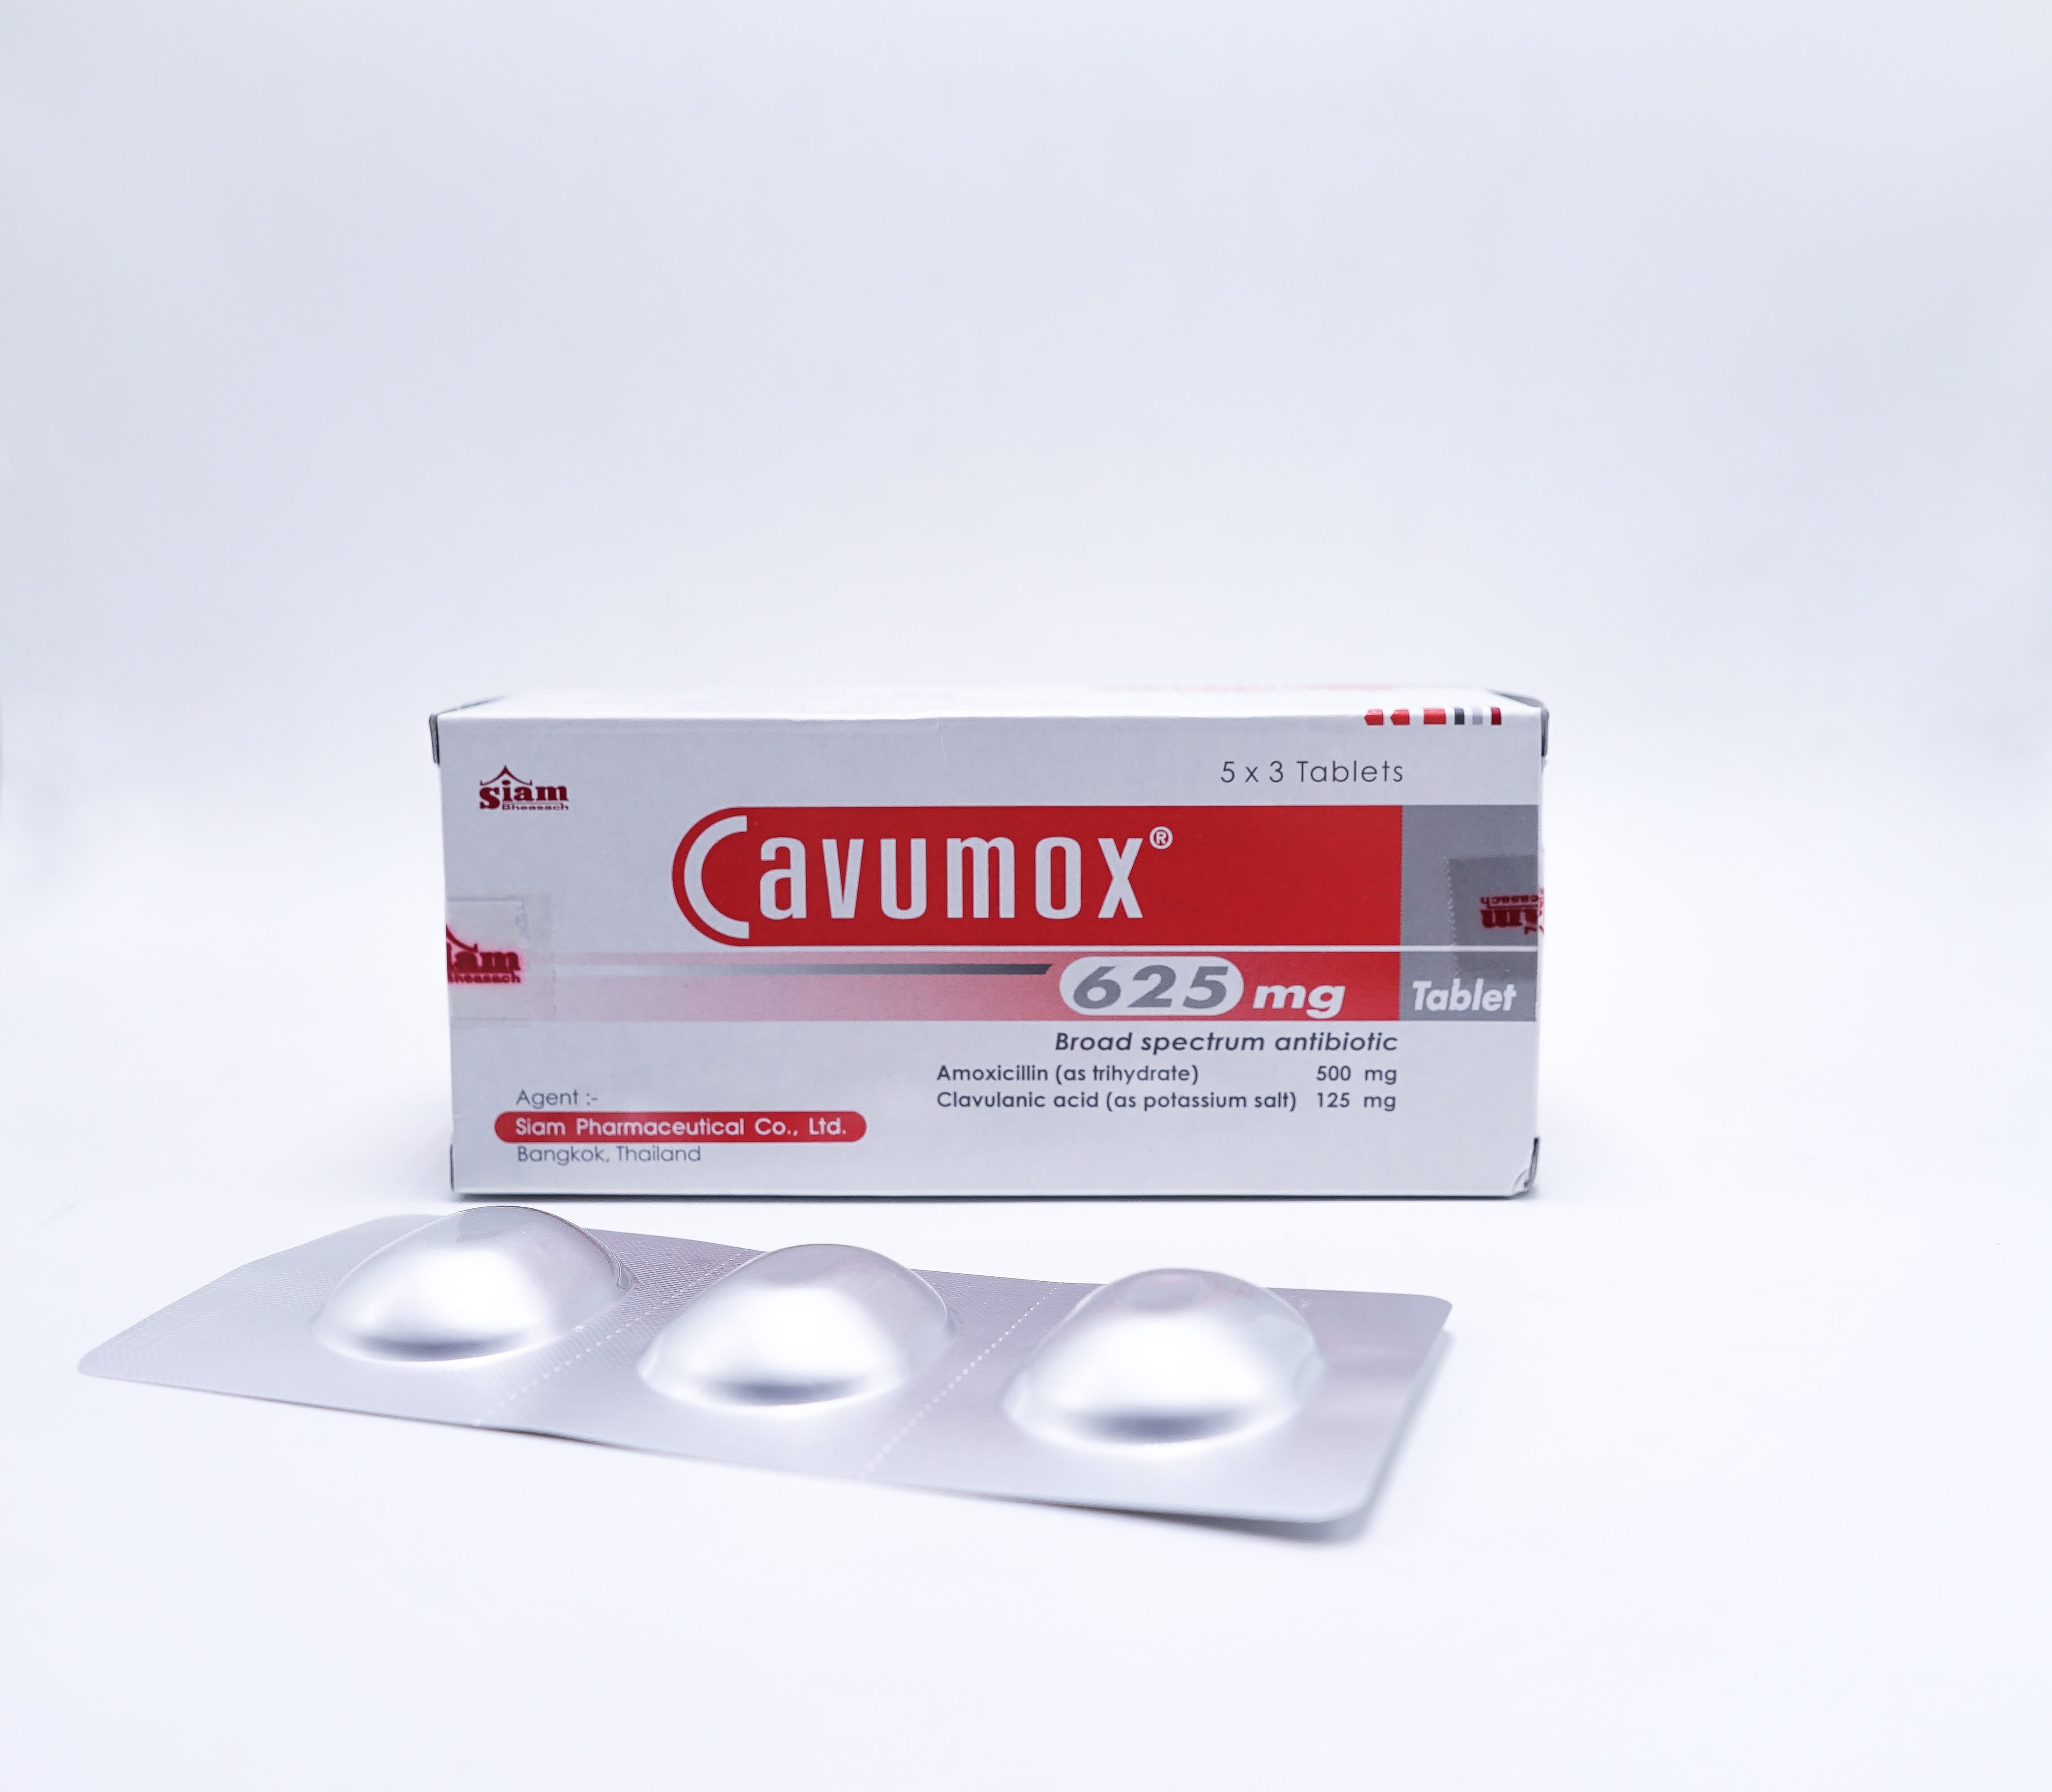 ยา cavumox 625 mg tablets